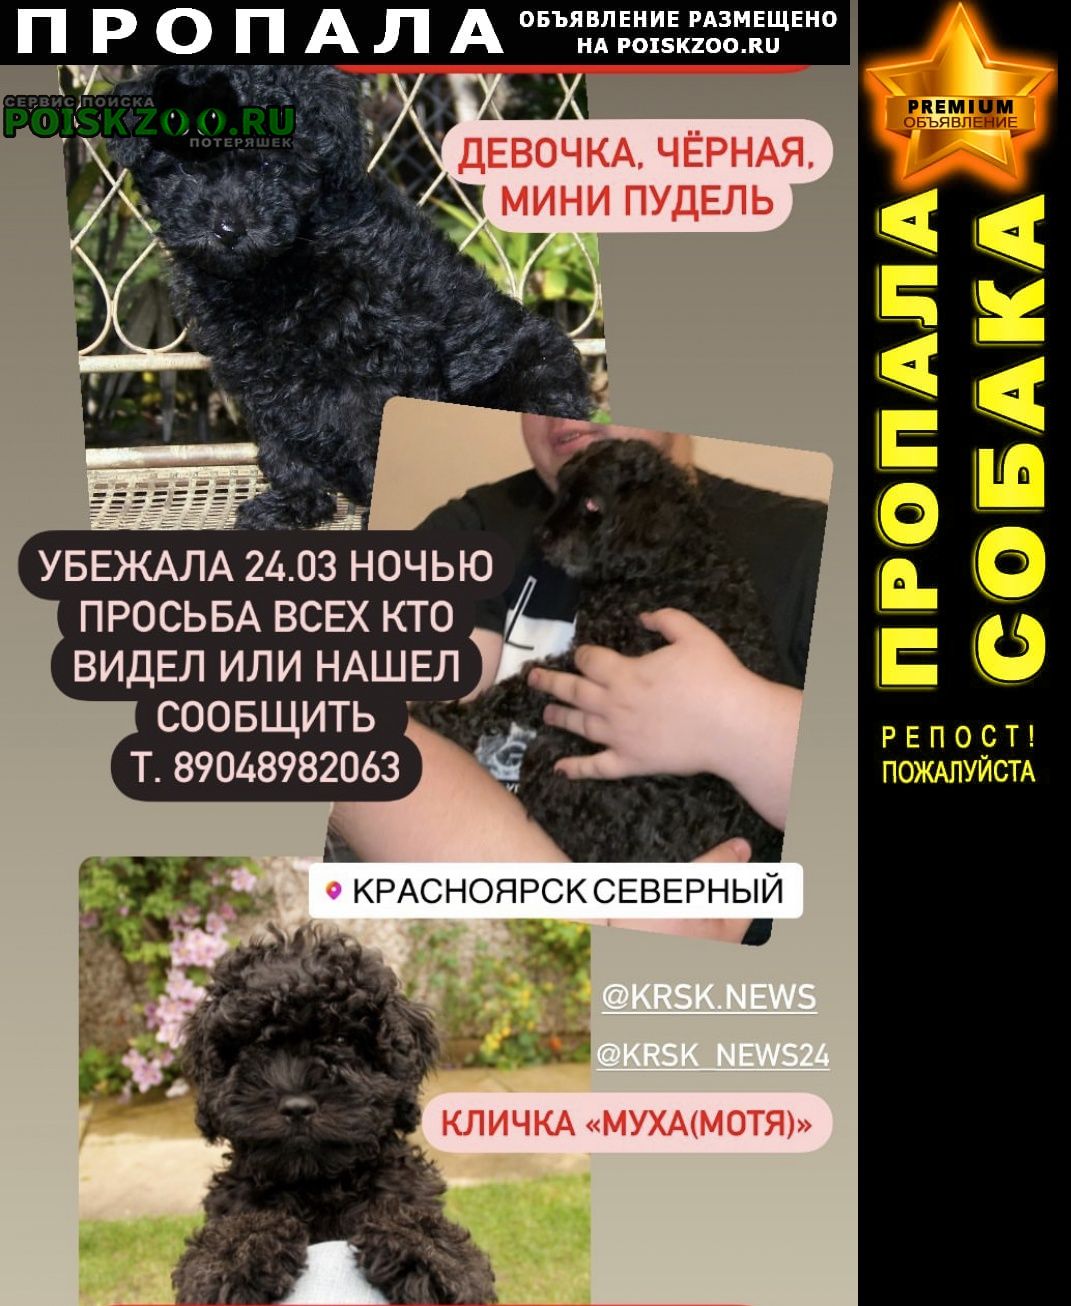 Пропала собака, северный Красноярск